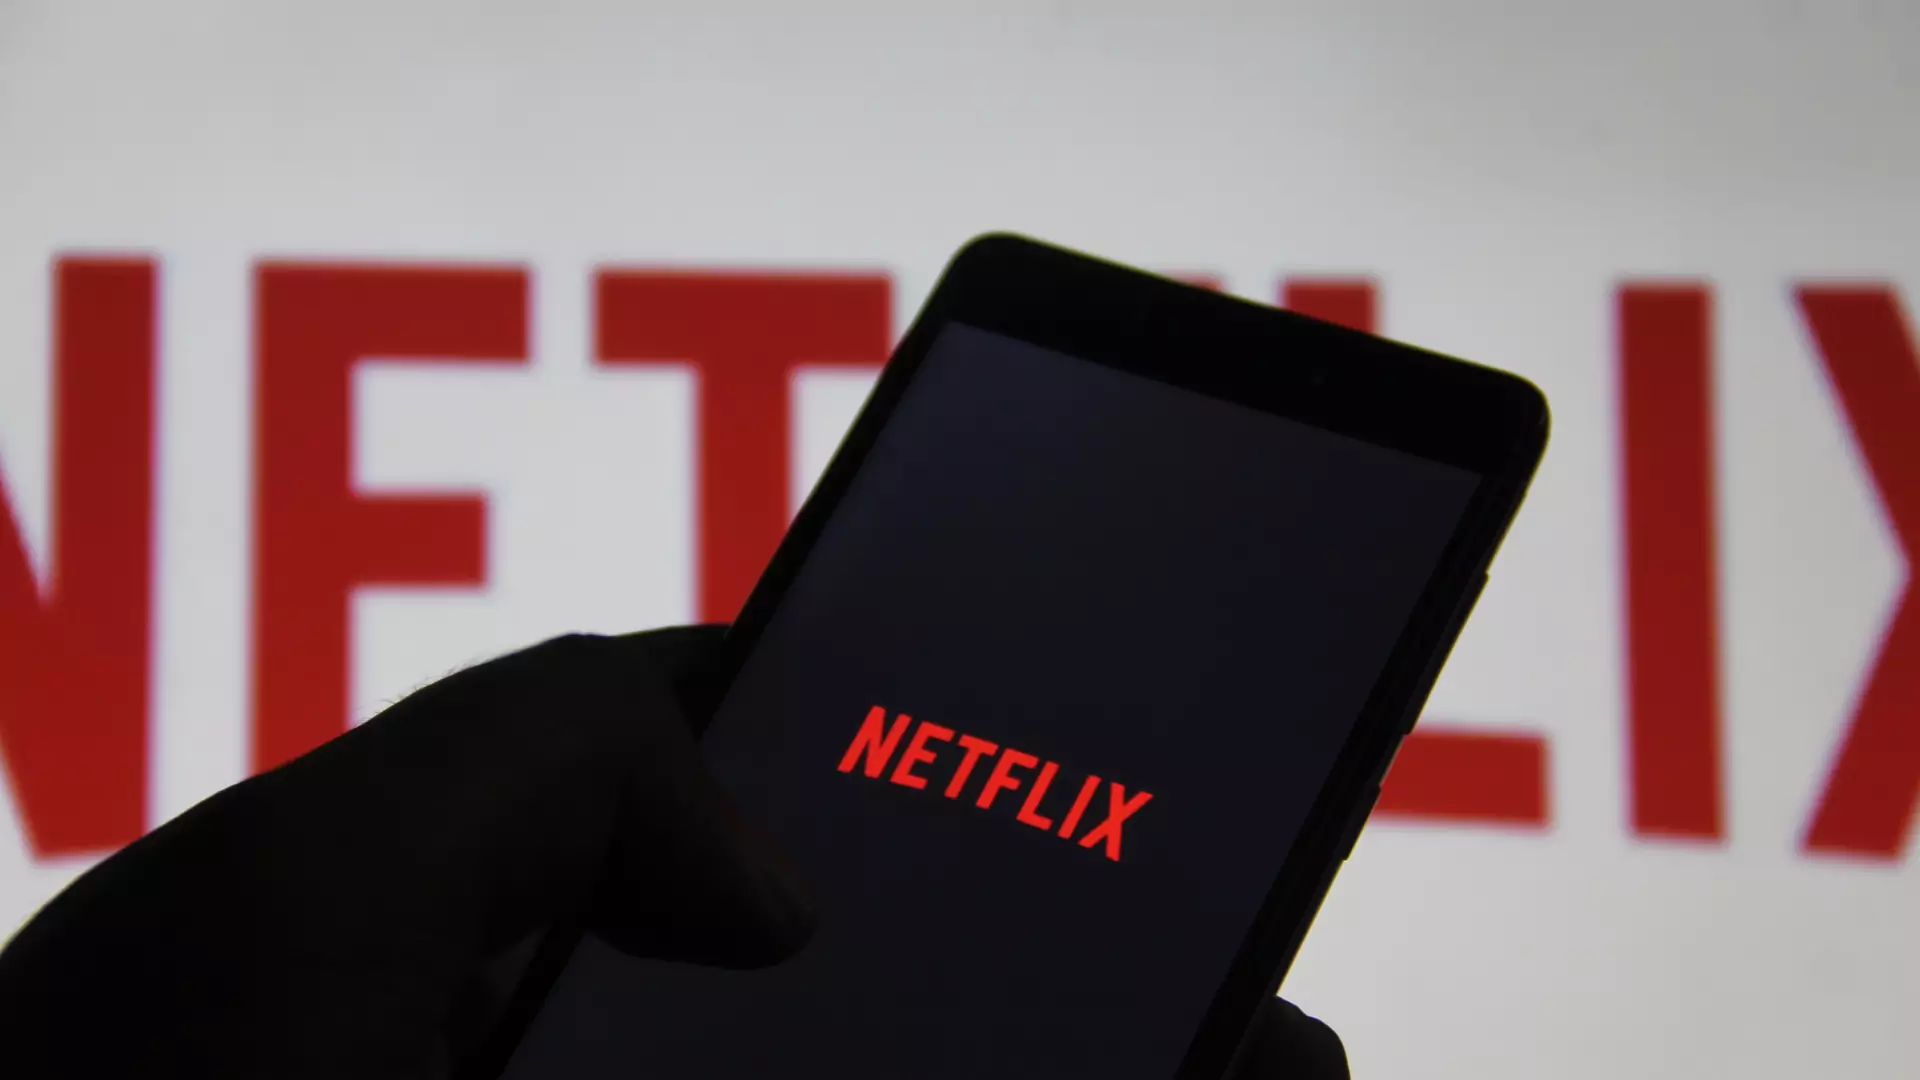 Tańszy Netflix dla użytkowników smartfonów. Serwis testuje nowe plany taryfowe